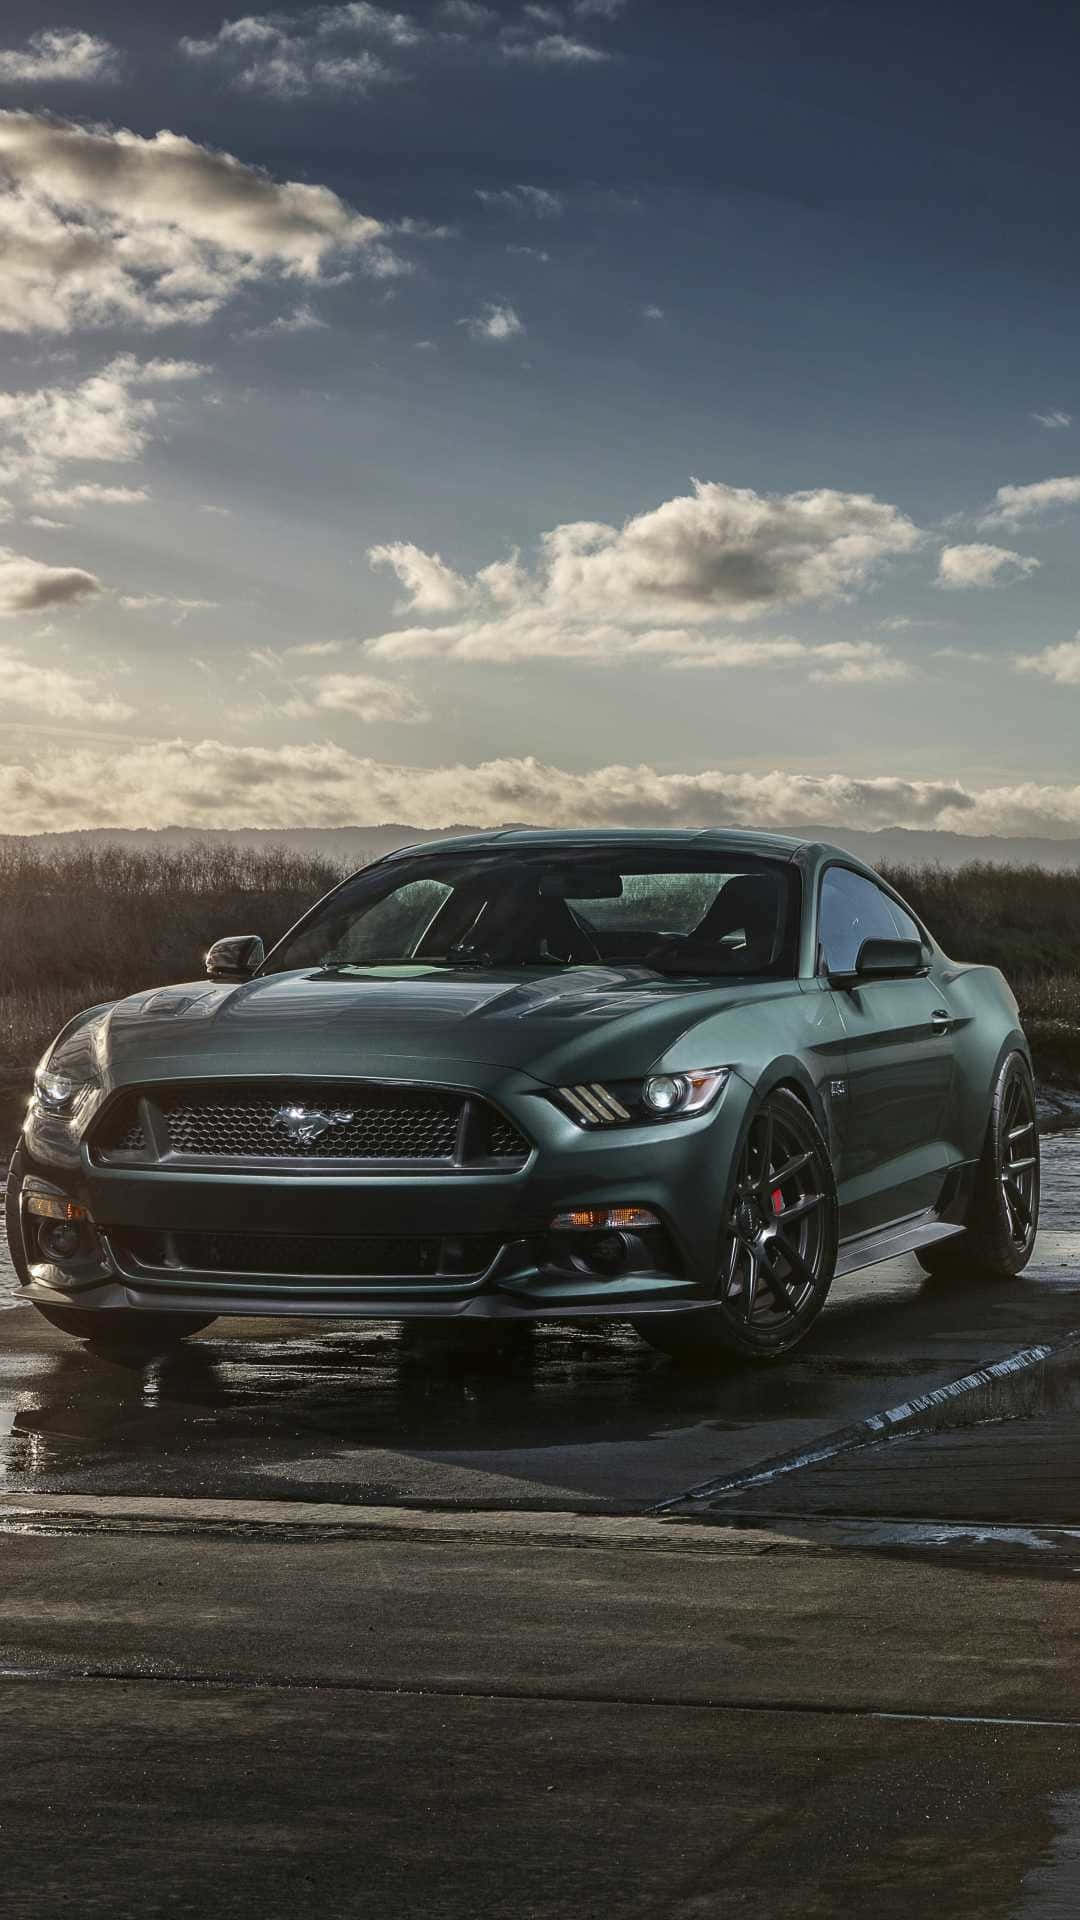 Automóvildeportivo Ford Mustang 2019 Después De La Lluvia. Fondo de pantalla